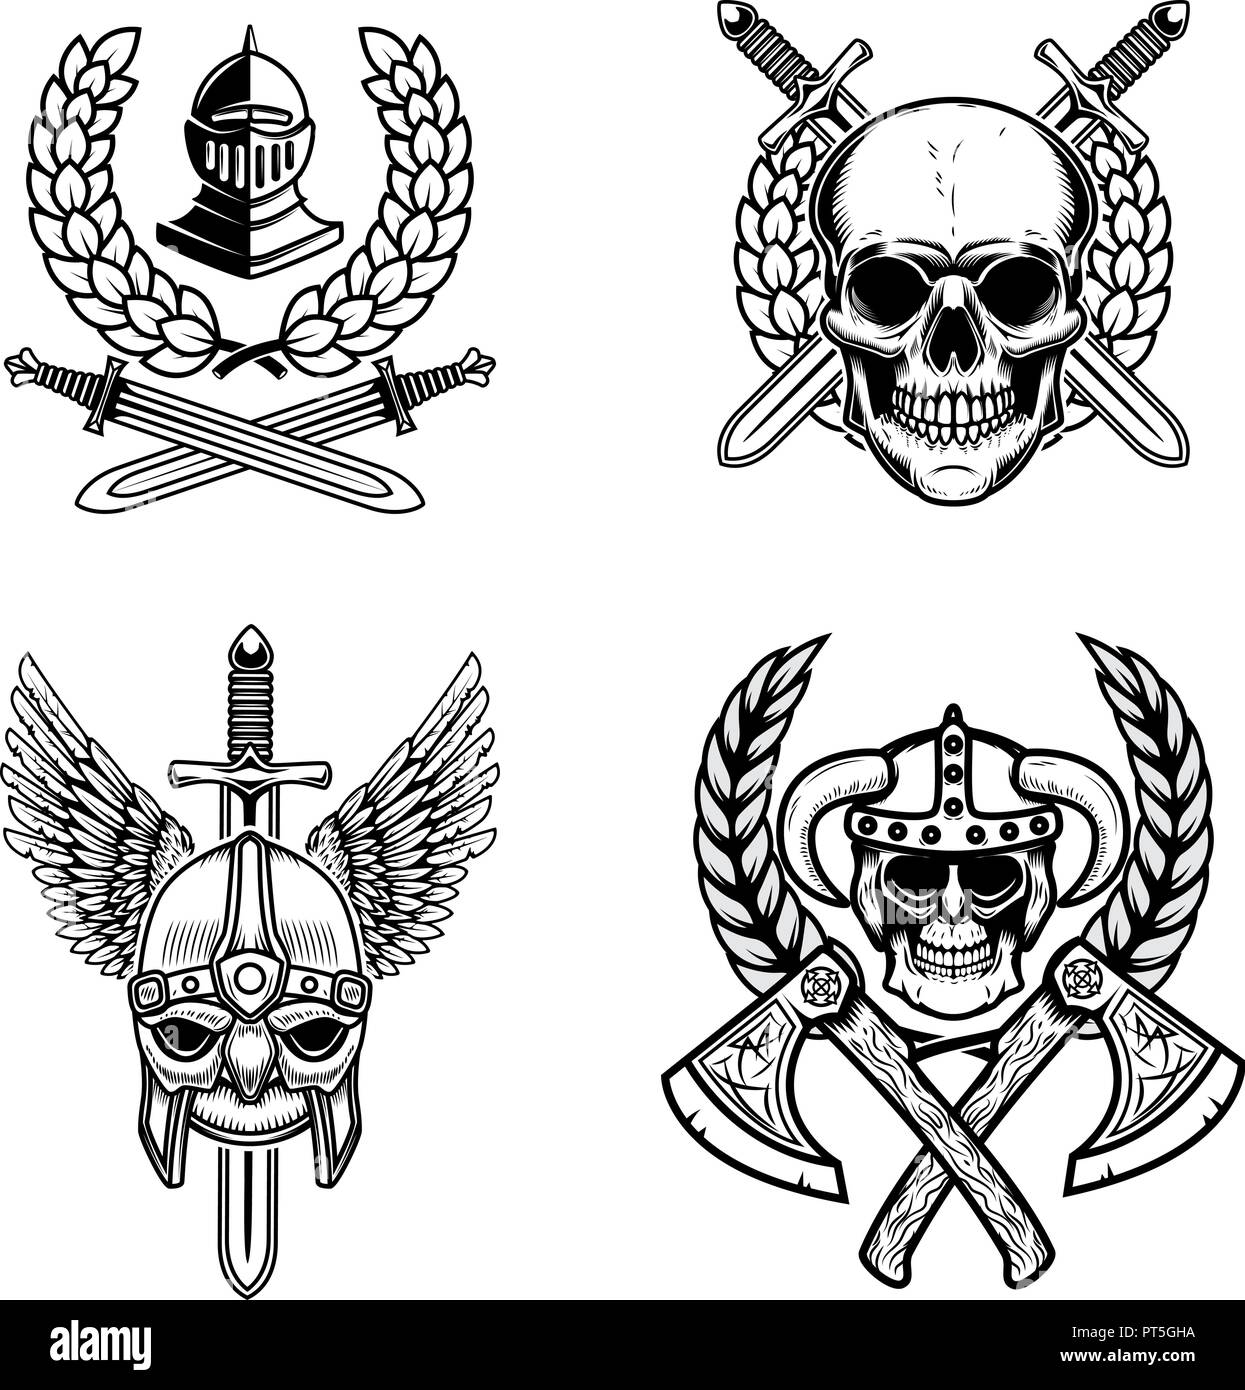 Einstellen der Embleme mit Viking alte Waffe. Design Element für Logo, Label, Emblem, Zeichen, Poster. Vector Illustration Stock Vektor